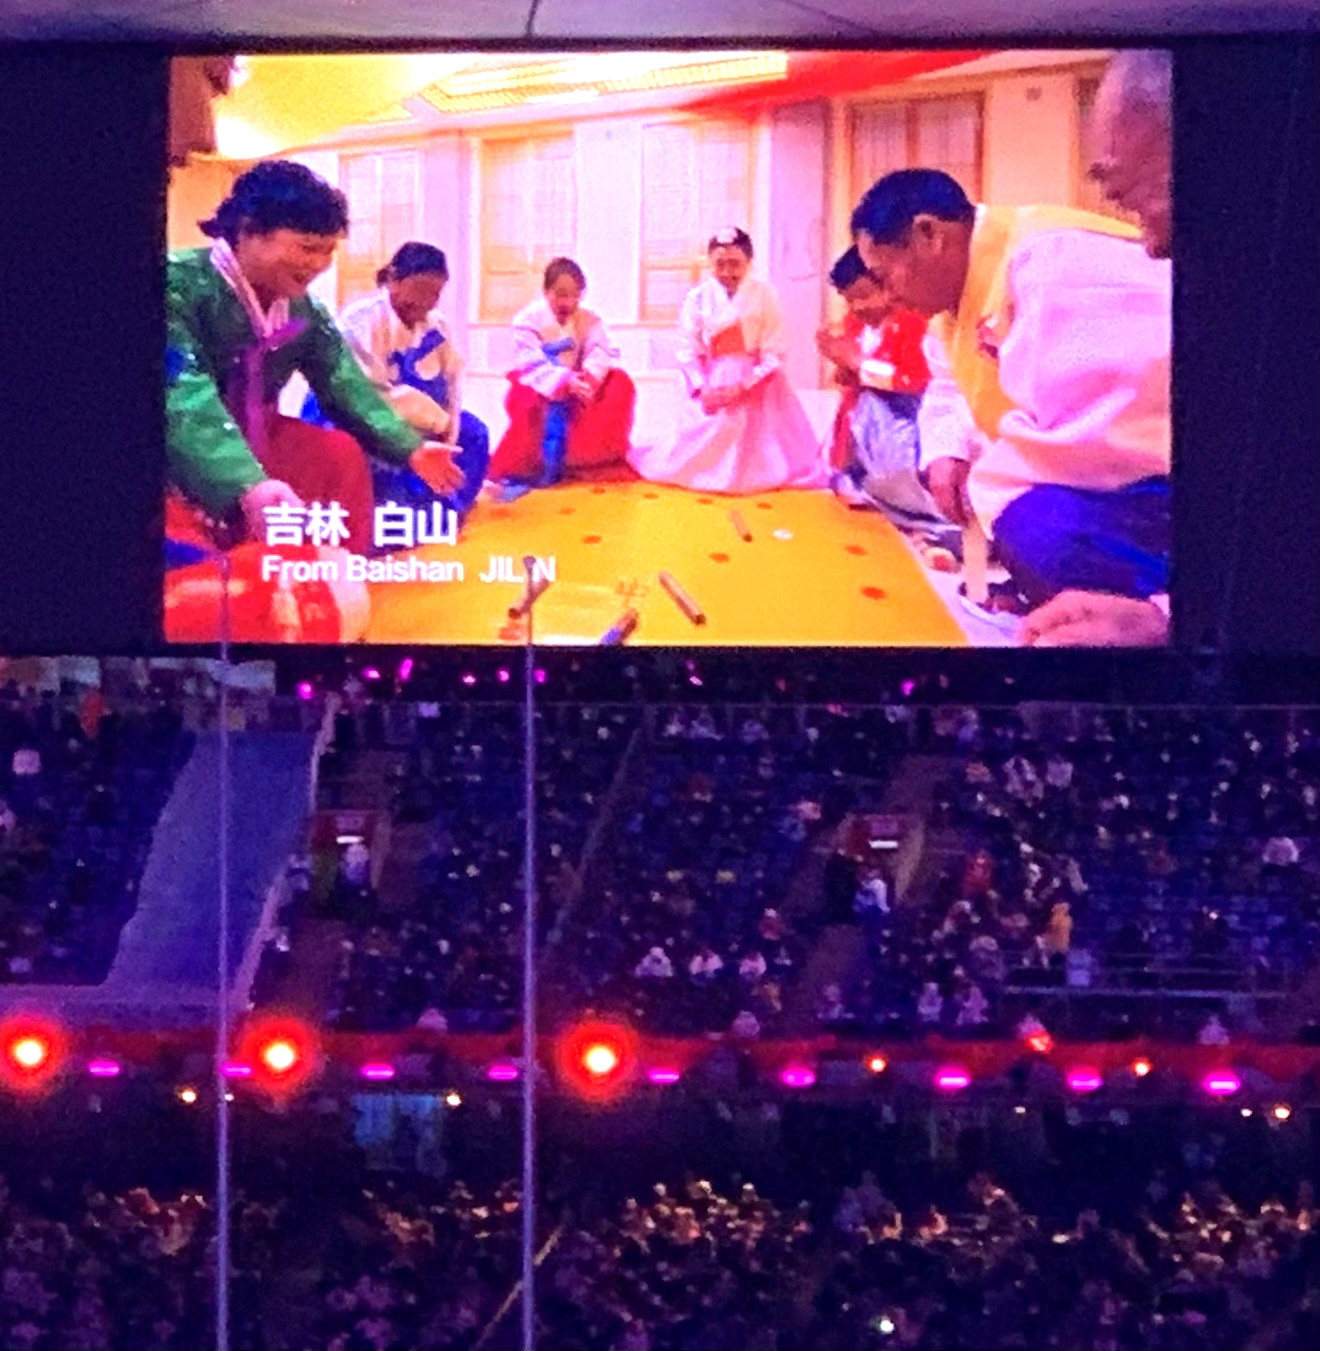 4일 중국 베이징 국가체육장에서 열린 2022 베이징동계올림픽 개회식에서 조선족들이 설날 윷놀이를 하는 장면이 대형 화면을 통해 방영되고 있다. 베이징 류지영 특파원